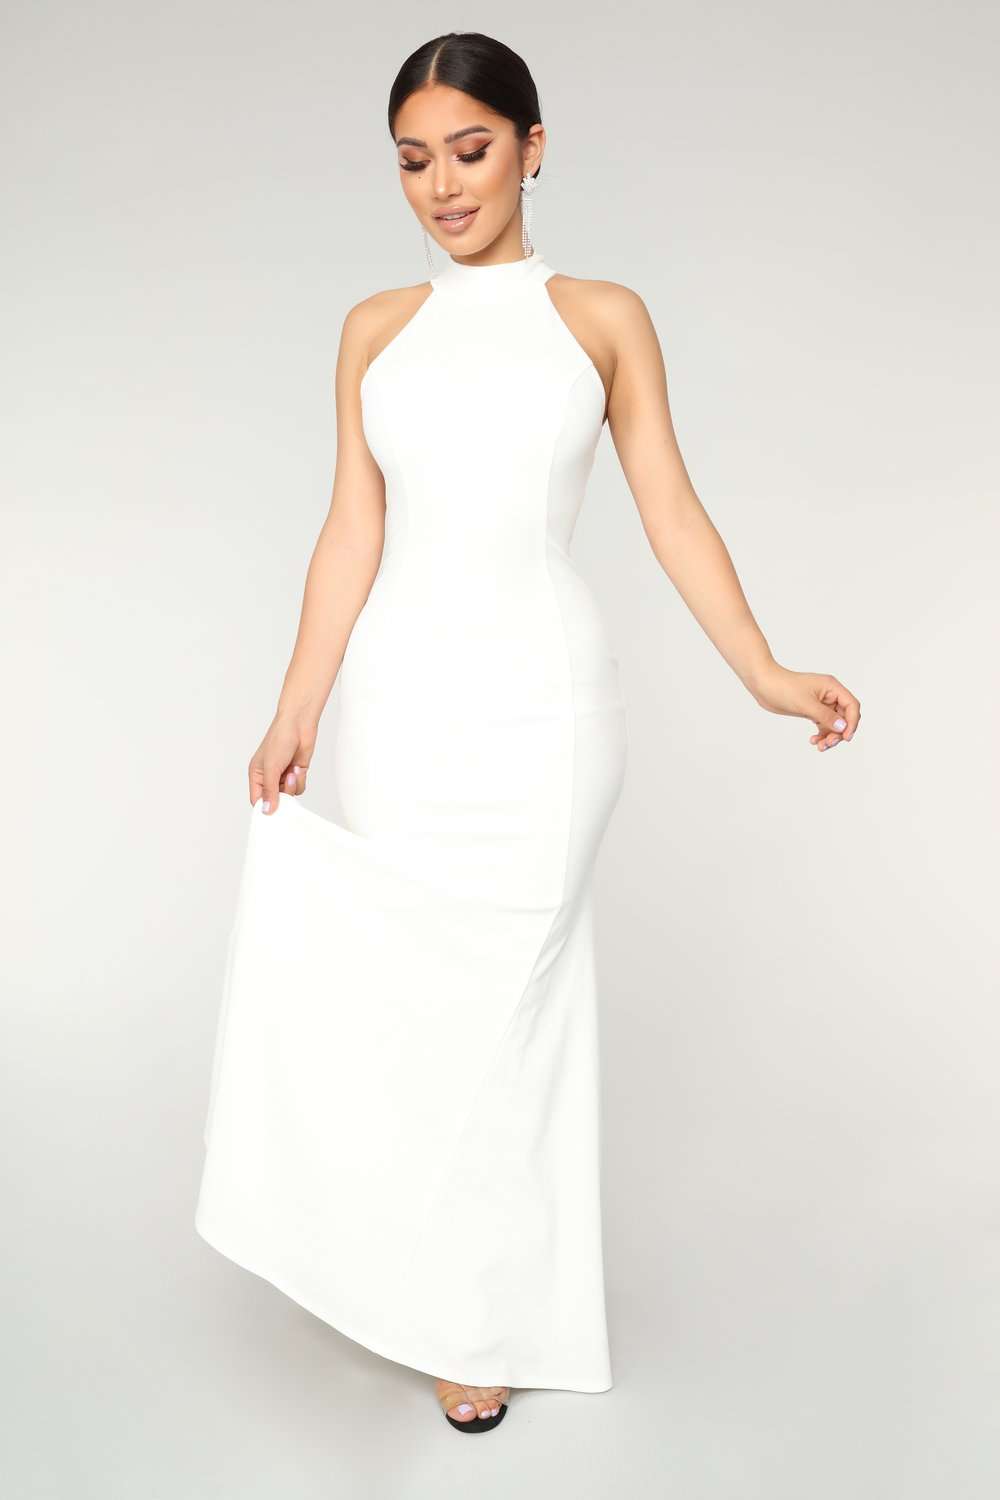 Выпустили копию роскошного свадебного платья Меган Маркл, и его цена просто смешная - фото 411529